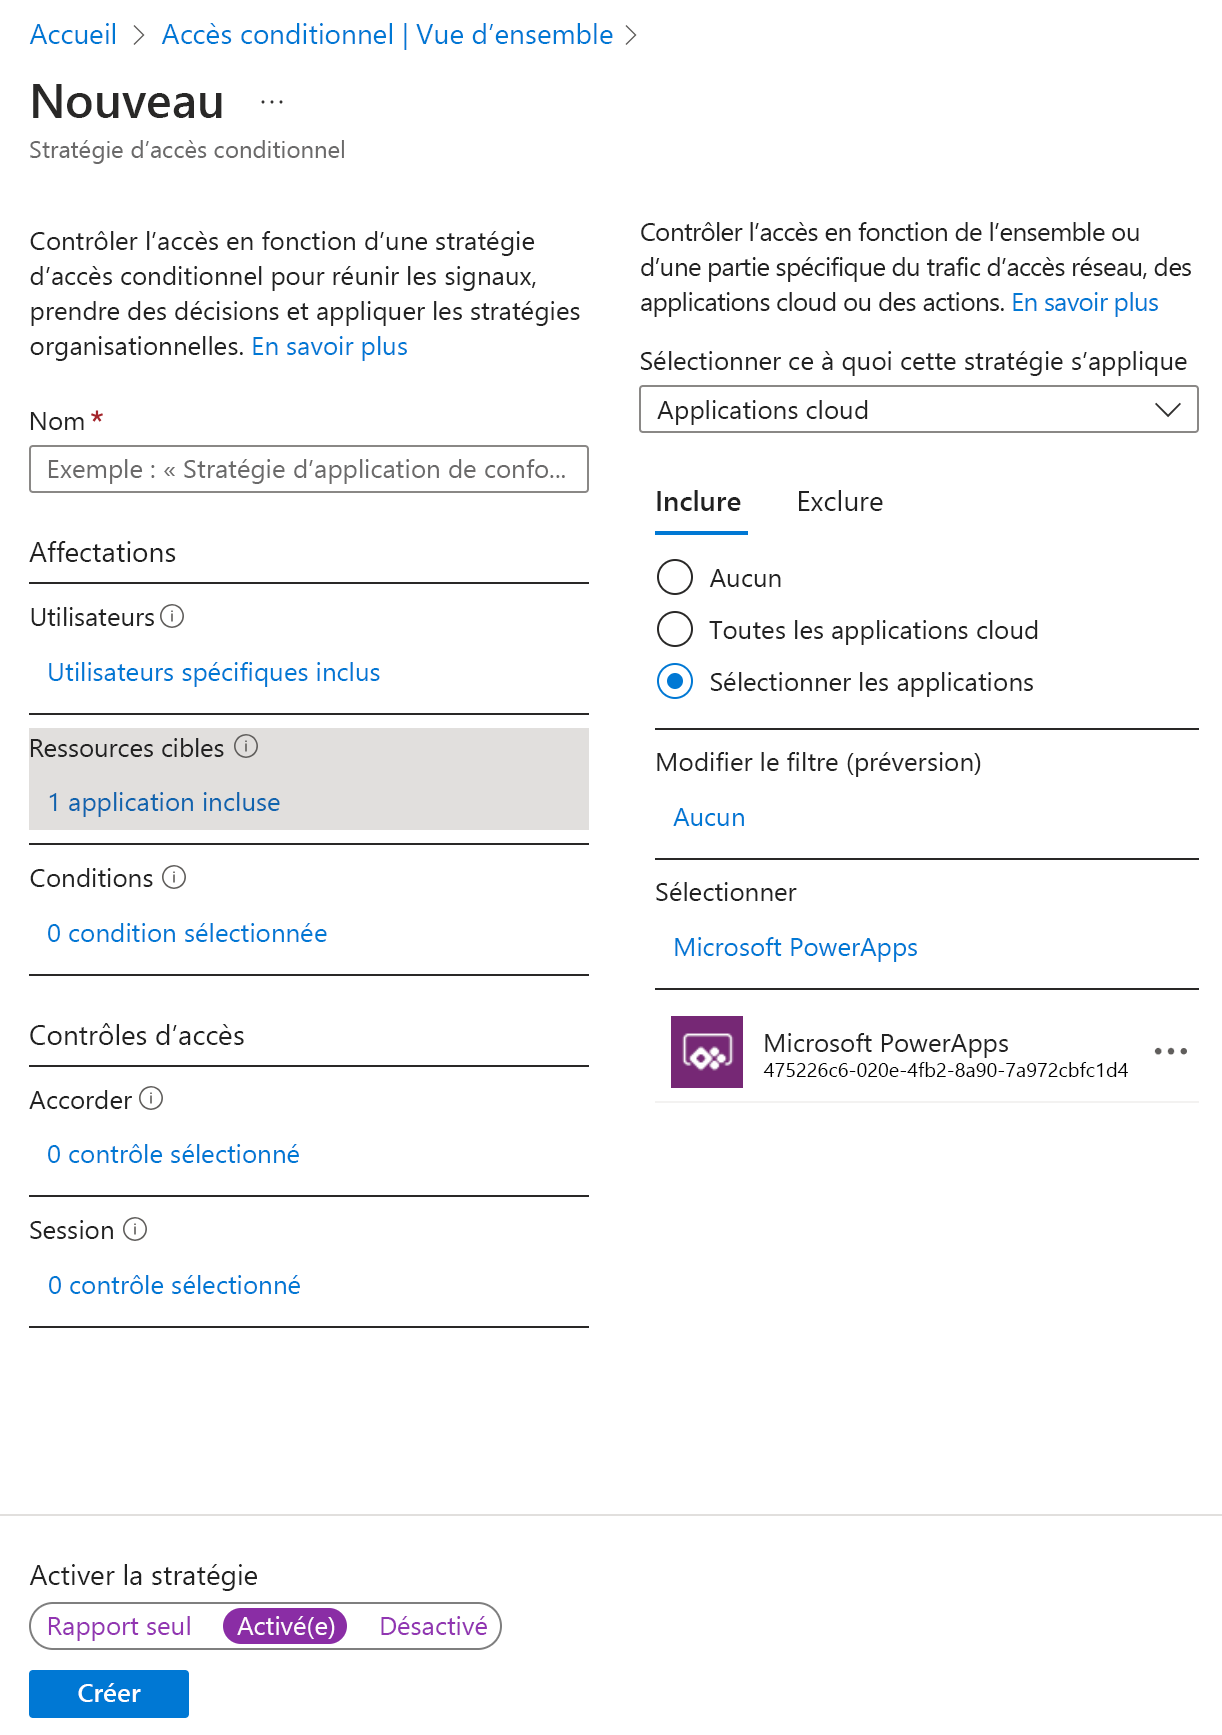 Capture d’écran de l’Accès conditionnel Azure AD : page d’applications ou actions cloud pour la configuration.